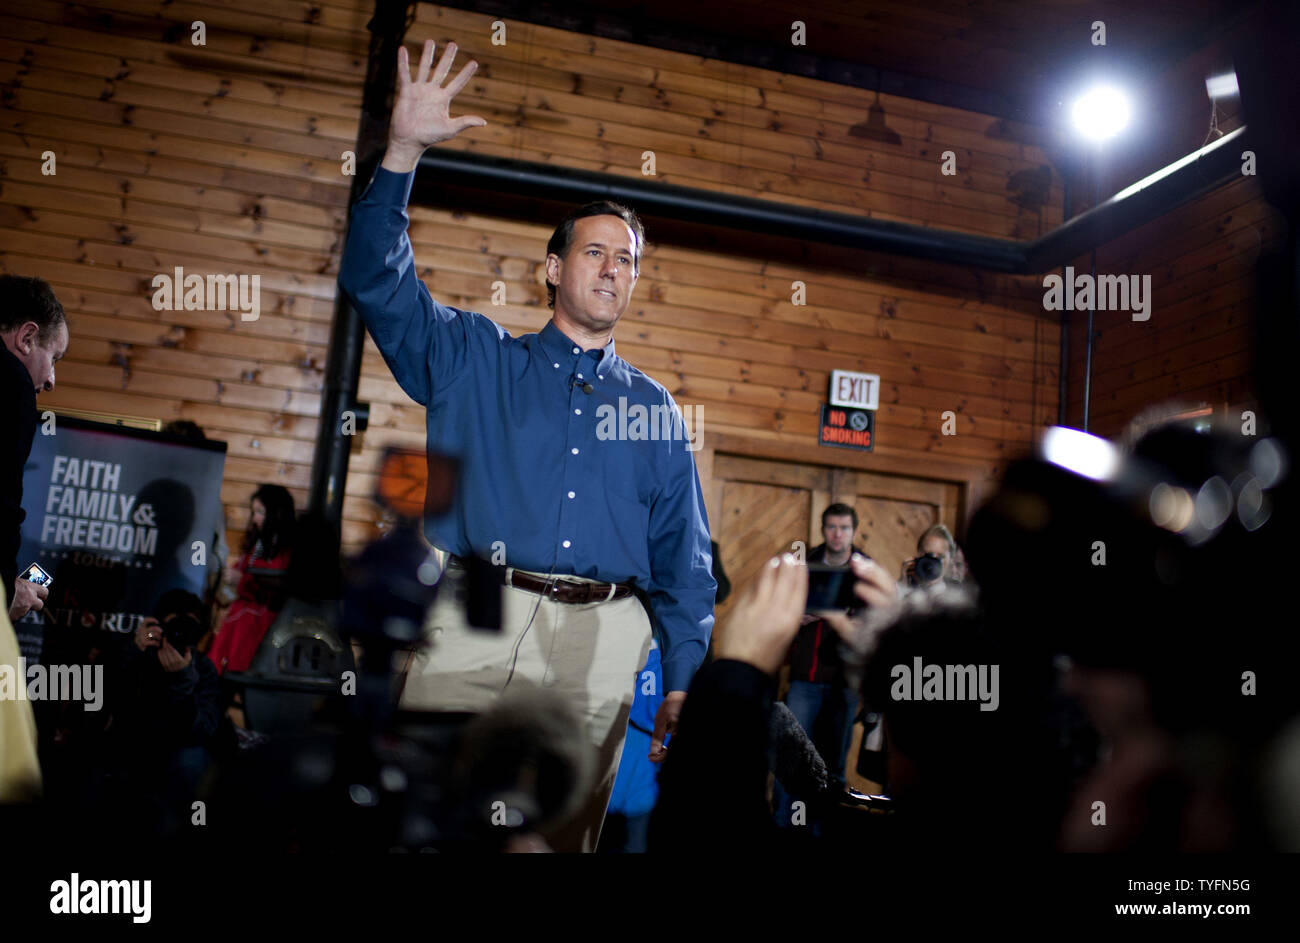 Candidat présidentiel républicain Rick Santorum parle à une assemblée publique dans la région de Northfield, New Hampshire le 5 janvier 2012. Santorum fait campagne avant les primaires du New Hampshire. UPI/Kevin Dietsch Banque D'Images